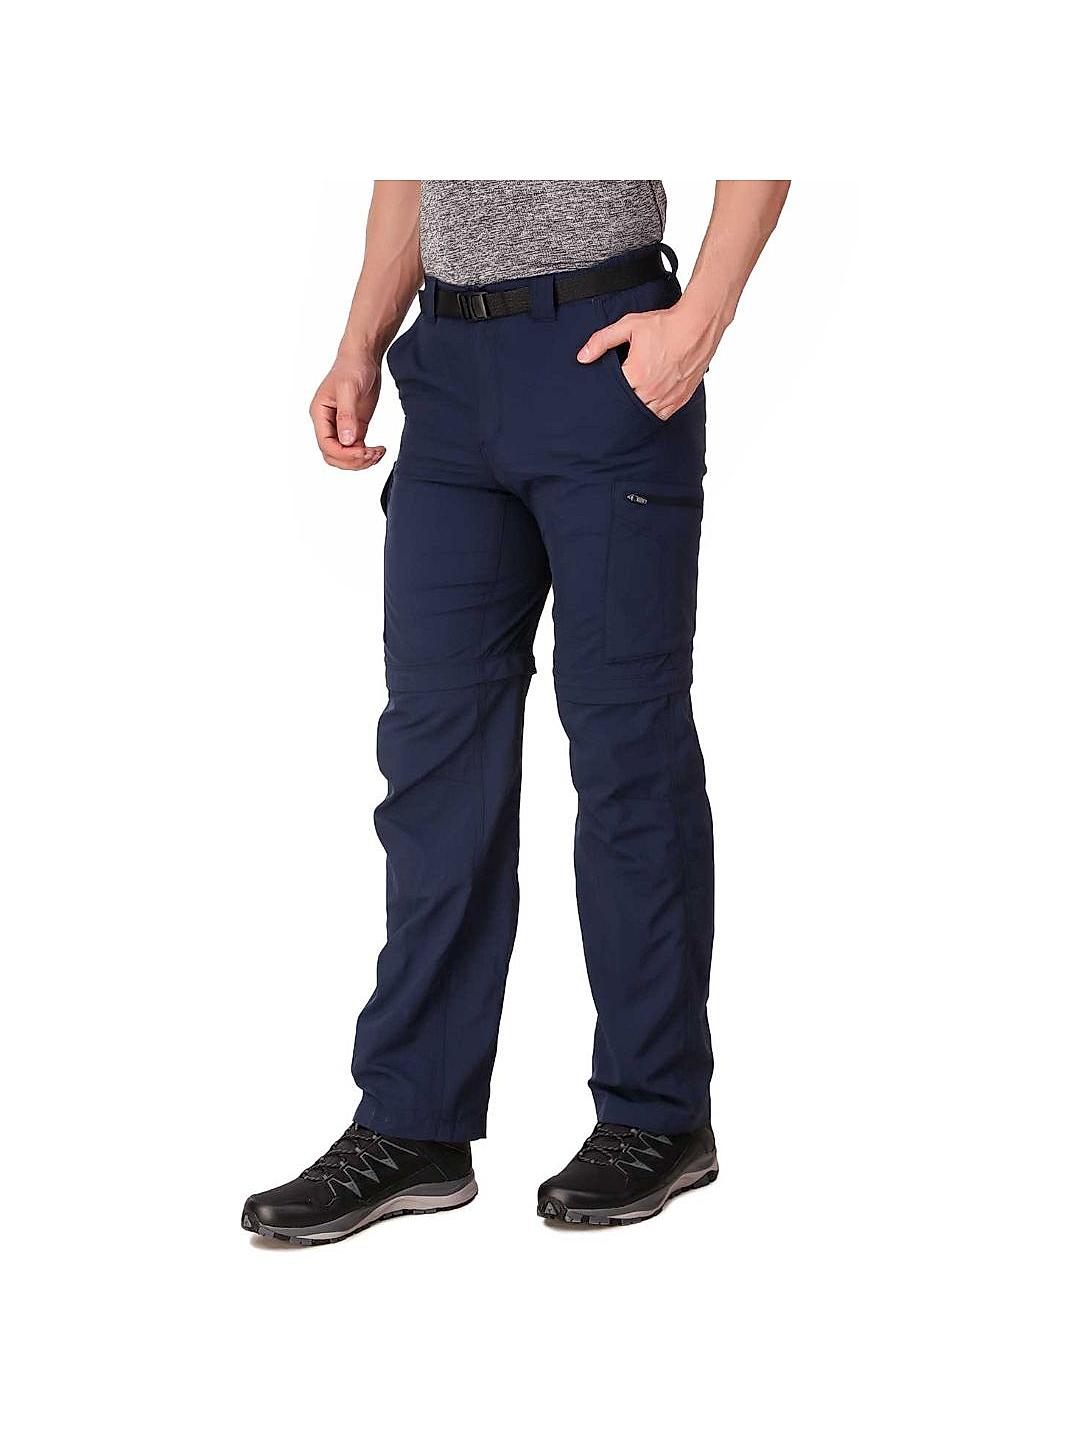 Men’s Silver Ridge™ Utility Convertible Pants